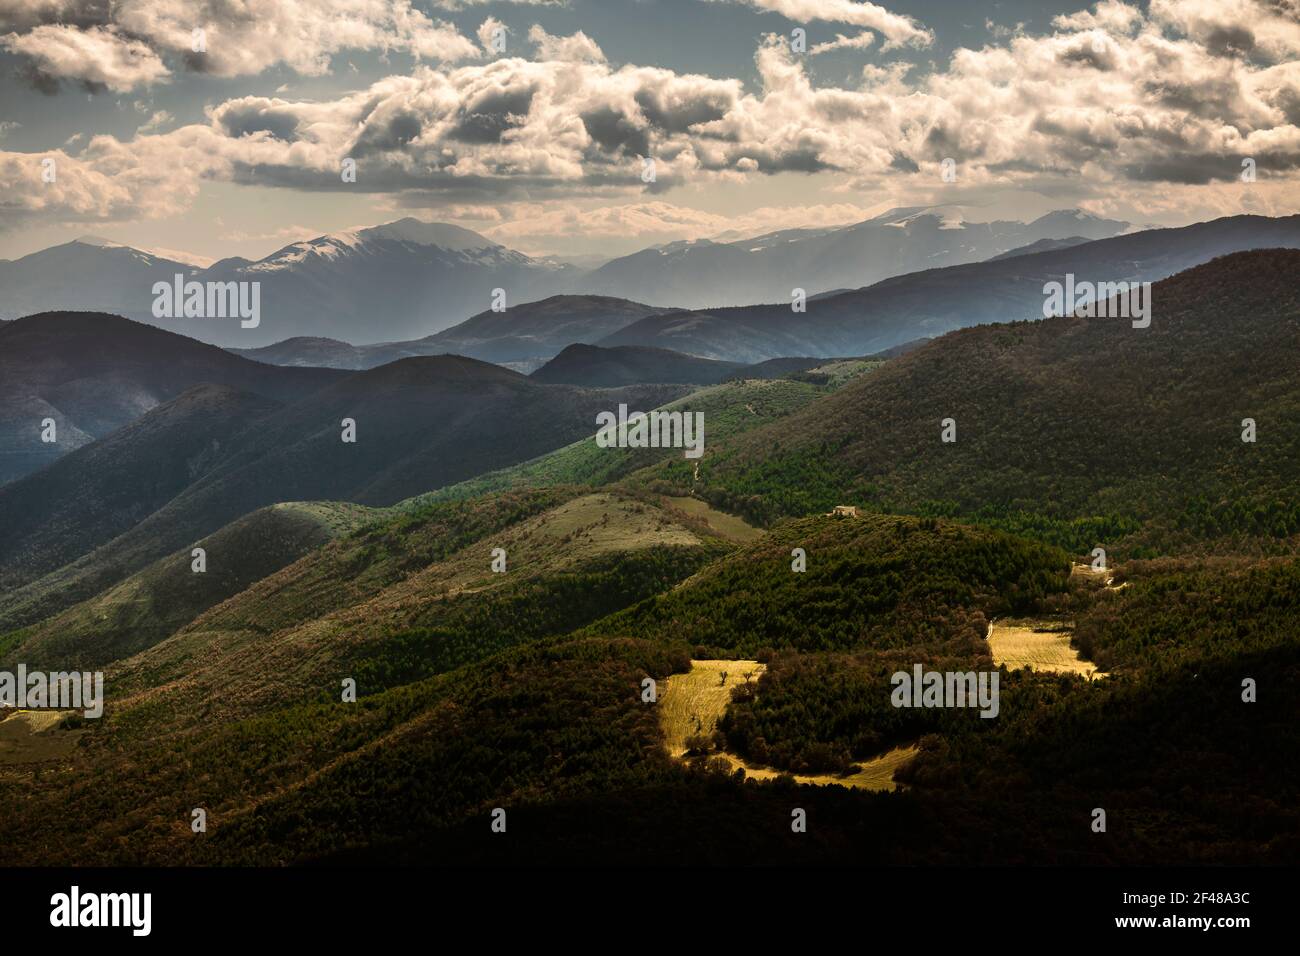 Paysage naturel des montagnes des Abruzzes, collines et champs de blé et sommets enneigés. Abruzzes, Italie, Europe Banque D'Images